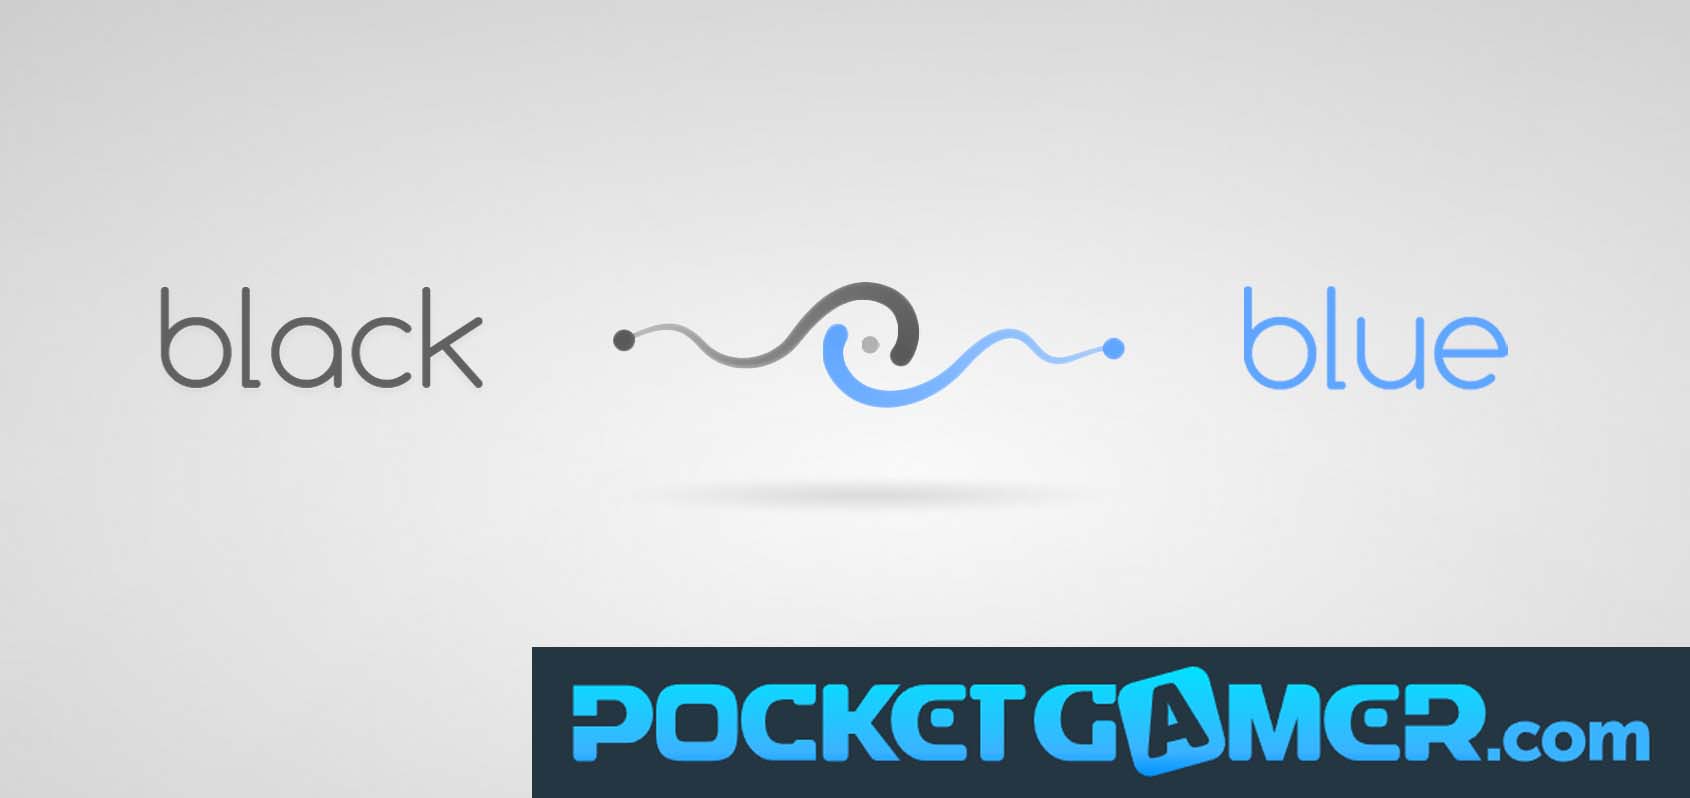 Black Blue Pocket Gamer Review